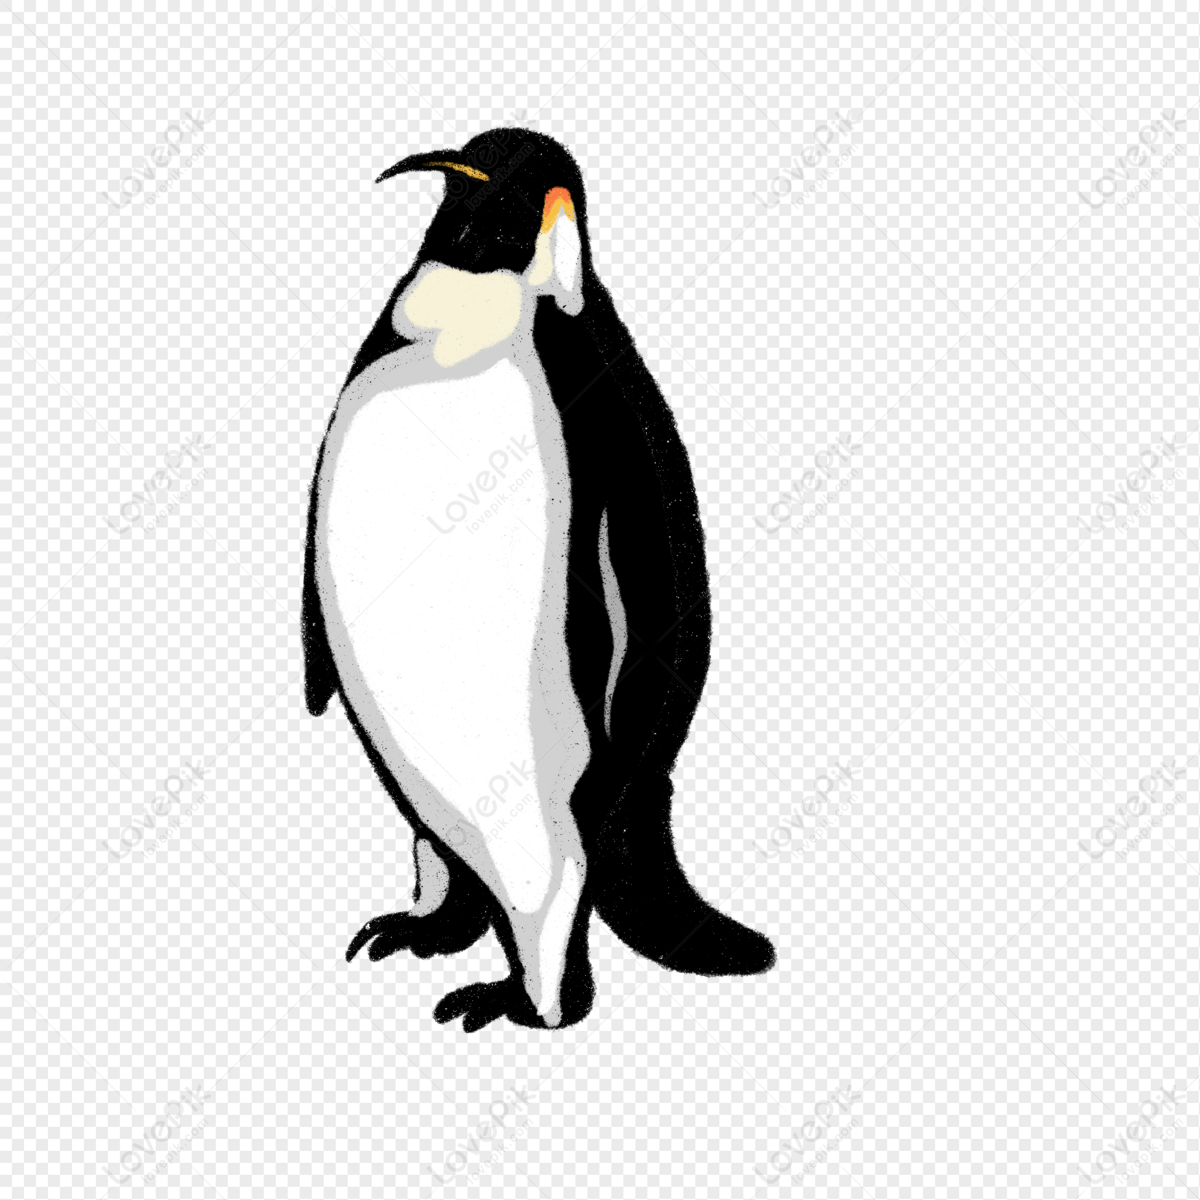 Cartoon Elegant Emperor Penguin Illustration PNG Transparent And Clipart  Image For Free Download - Lovepik | 401300936